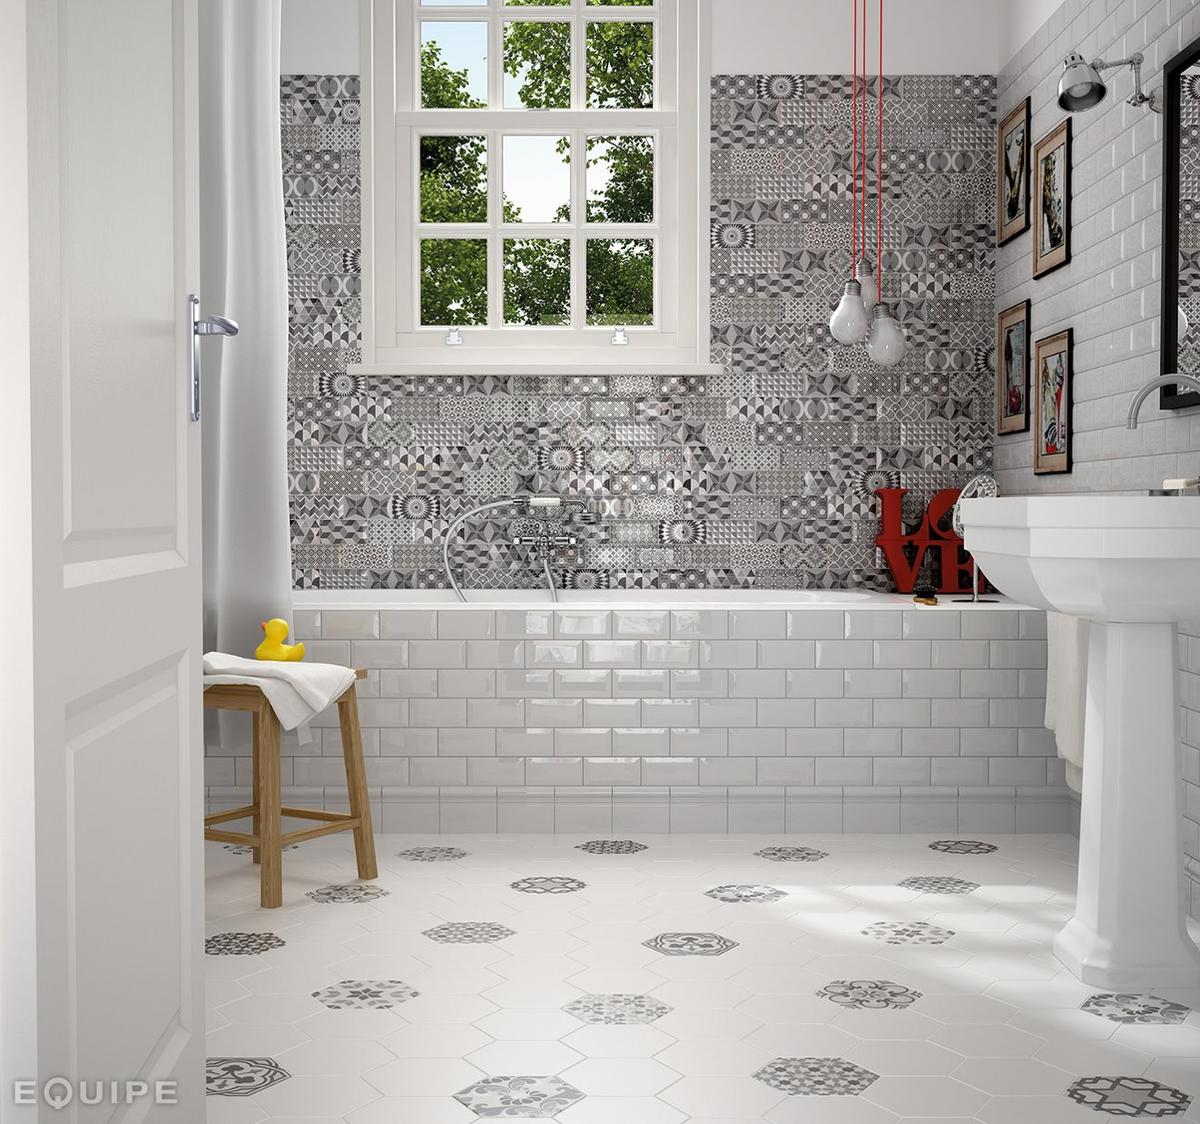 Carreau de ciment noir avec motifs géométriques 17.5x20 cm dans une salle de bain blanche avec accents rouge et déco murale